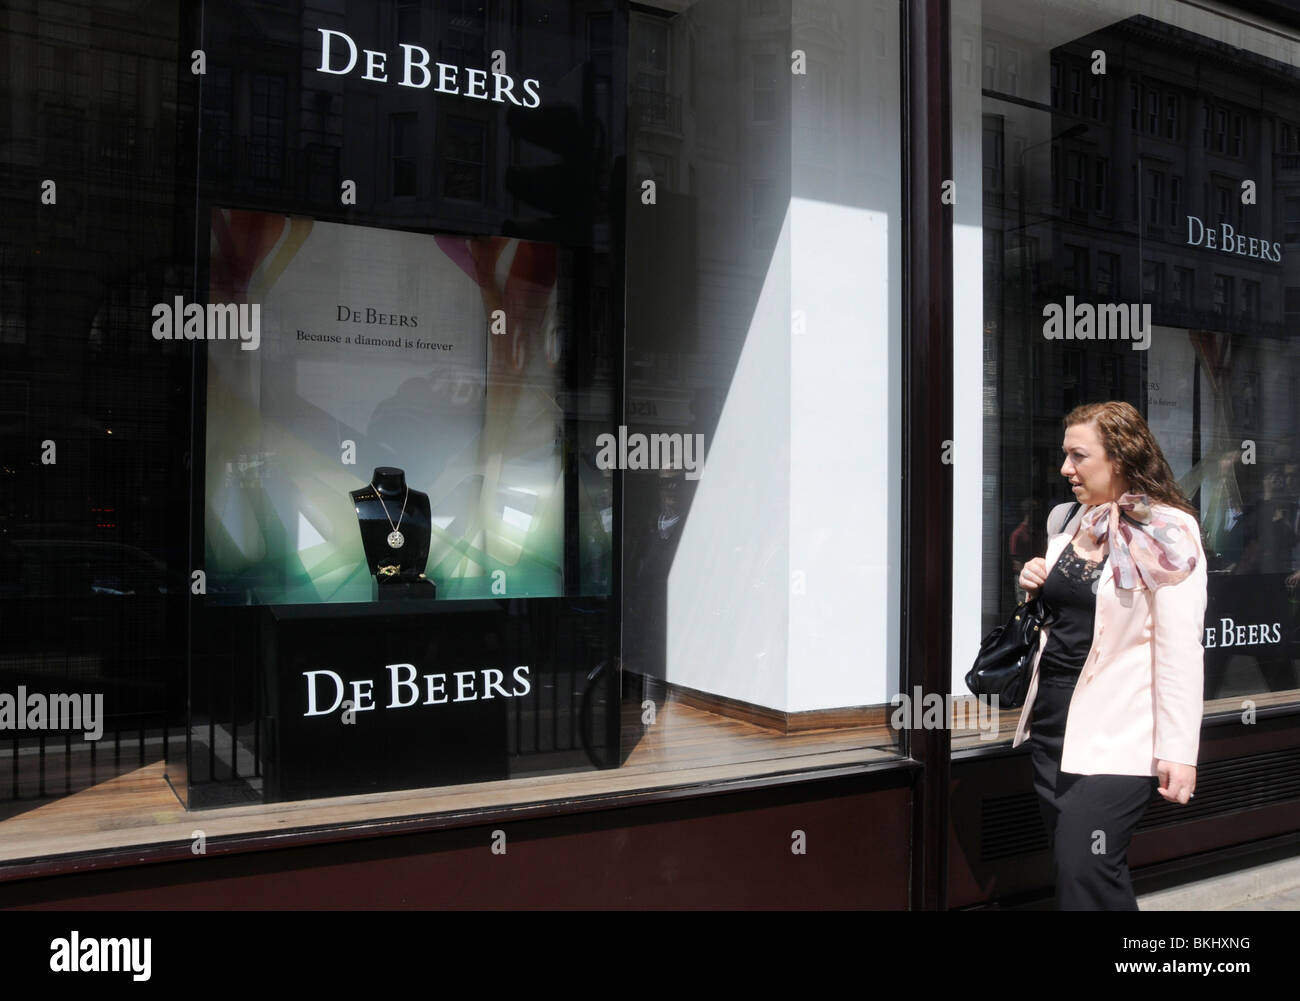 De Beers store Stock Photo - Alamy